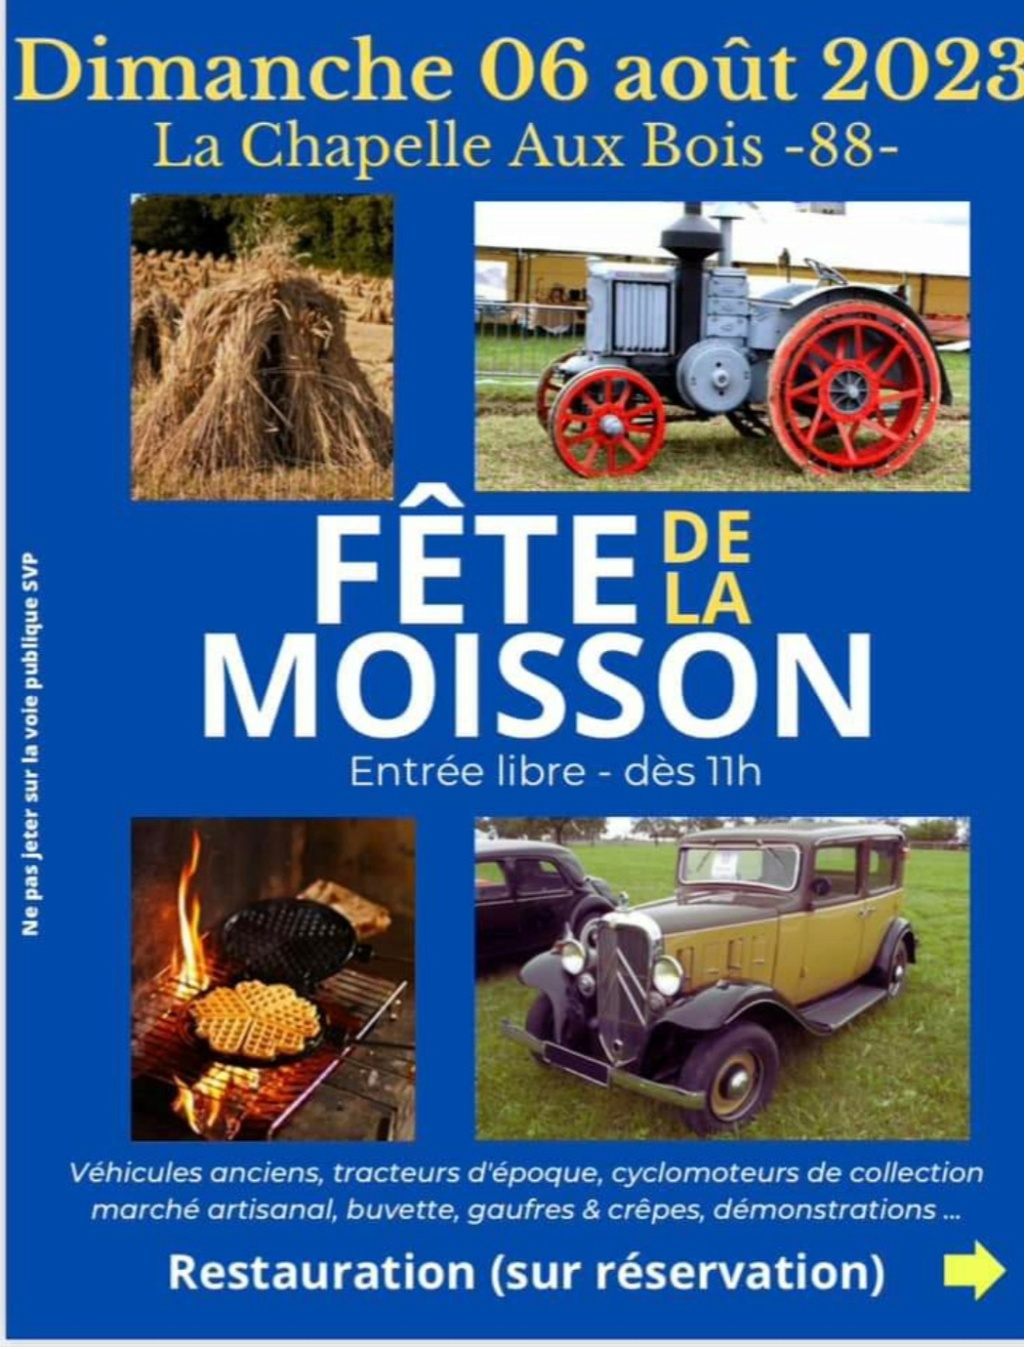 2023-08-06 - Fête de la moisson à La Chapelle aux Bois (88) 20230711